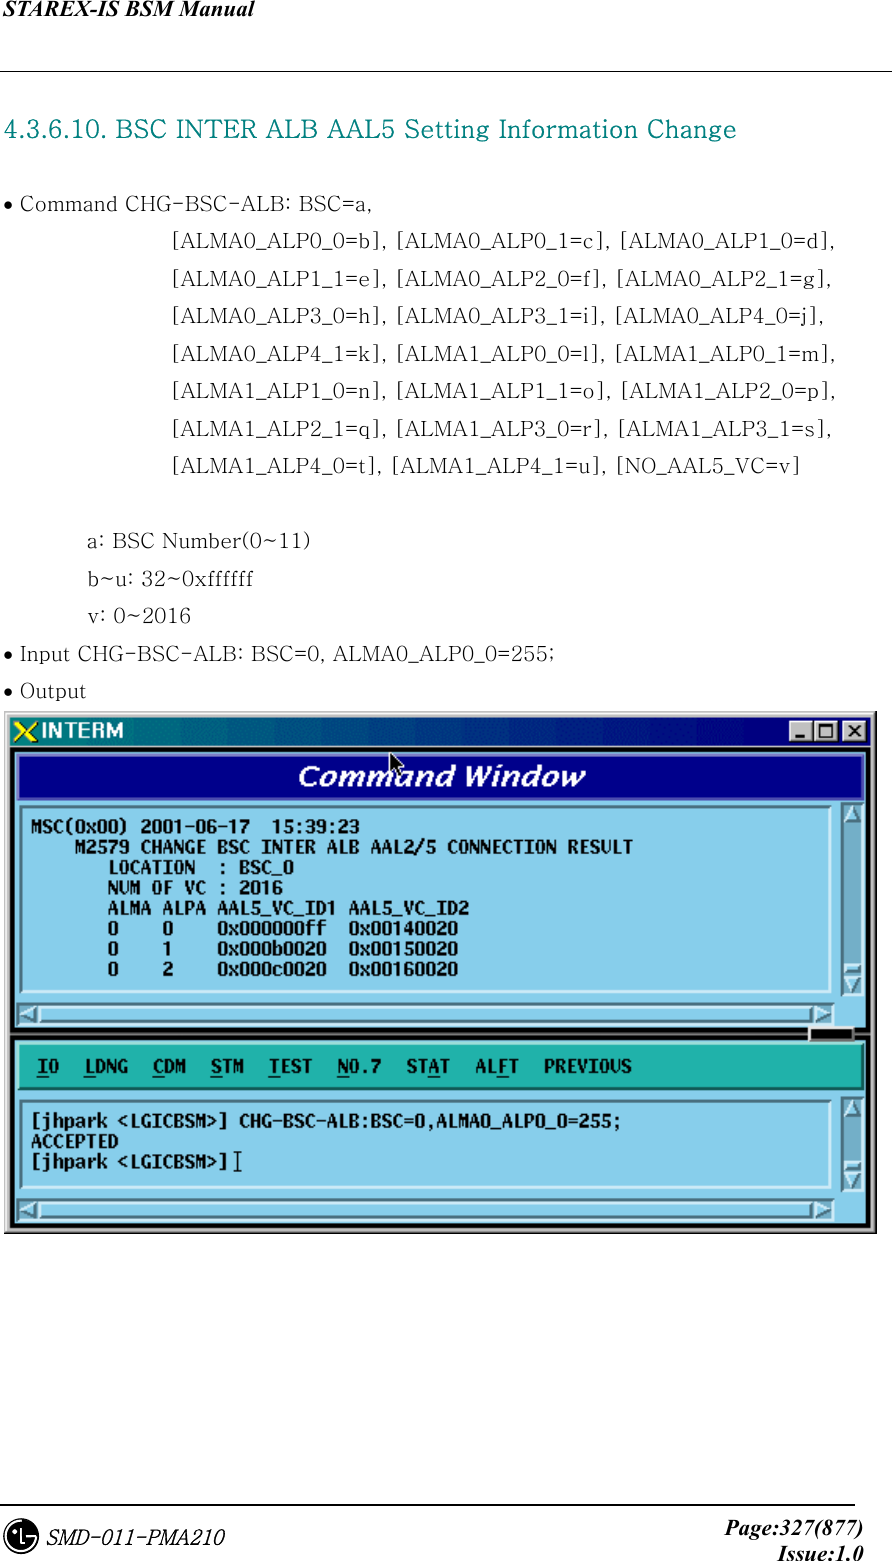 STAREX-IS BSM Manual     Page:327(877)Issue:1.0SMD-011-PMA210  4.3.6.10. BSC INTER ALB AAL5 Setting Information Change  • Command CHG-BSC-ALB: BSC=a,   [ALMA0_ALP0_0=b], [ALMA0_ALP0_1=c], [ALMA0_ALP1_0=d],       [ALMA0_ALP1_1=e], [ALMA0_ALP2_0=f], [ALMA0_ALP2_1=g],       [ALMA0_ALP3_0=h], [ALMA0_ALP3_1=i], [ALMA0_ALP4_0=j],       [ALMA0_ALP4_1=k], [ALMA1_ALP0_0=l], [ALMA1_ALP0_1=m],       [ALMA1_ALP1_0=n], [ALMA1_ALP1_1=o], [ALMA1_ALP2_0=p],   [ALMA1_ALP2_1=q], [ALMA1_ALP3_0=r], [ALMA1_ALP3_1=s],       [ALMA1_ALP4_0=t], [ALMA1_ALP4_1=u], [NO_AAL5_VC=v]  a: BSC Number(0~11)         b~u: 32~0xffffff         v: 0~2016 • Input CHG-BSC-ALB: BSC=0, ALMA0_ALP0_0=255; • Output   